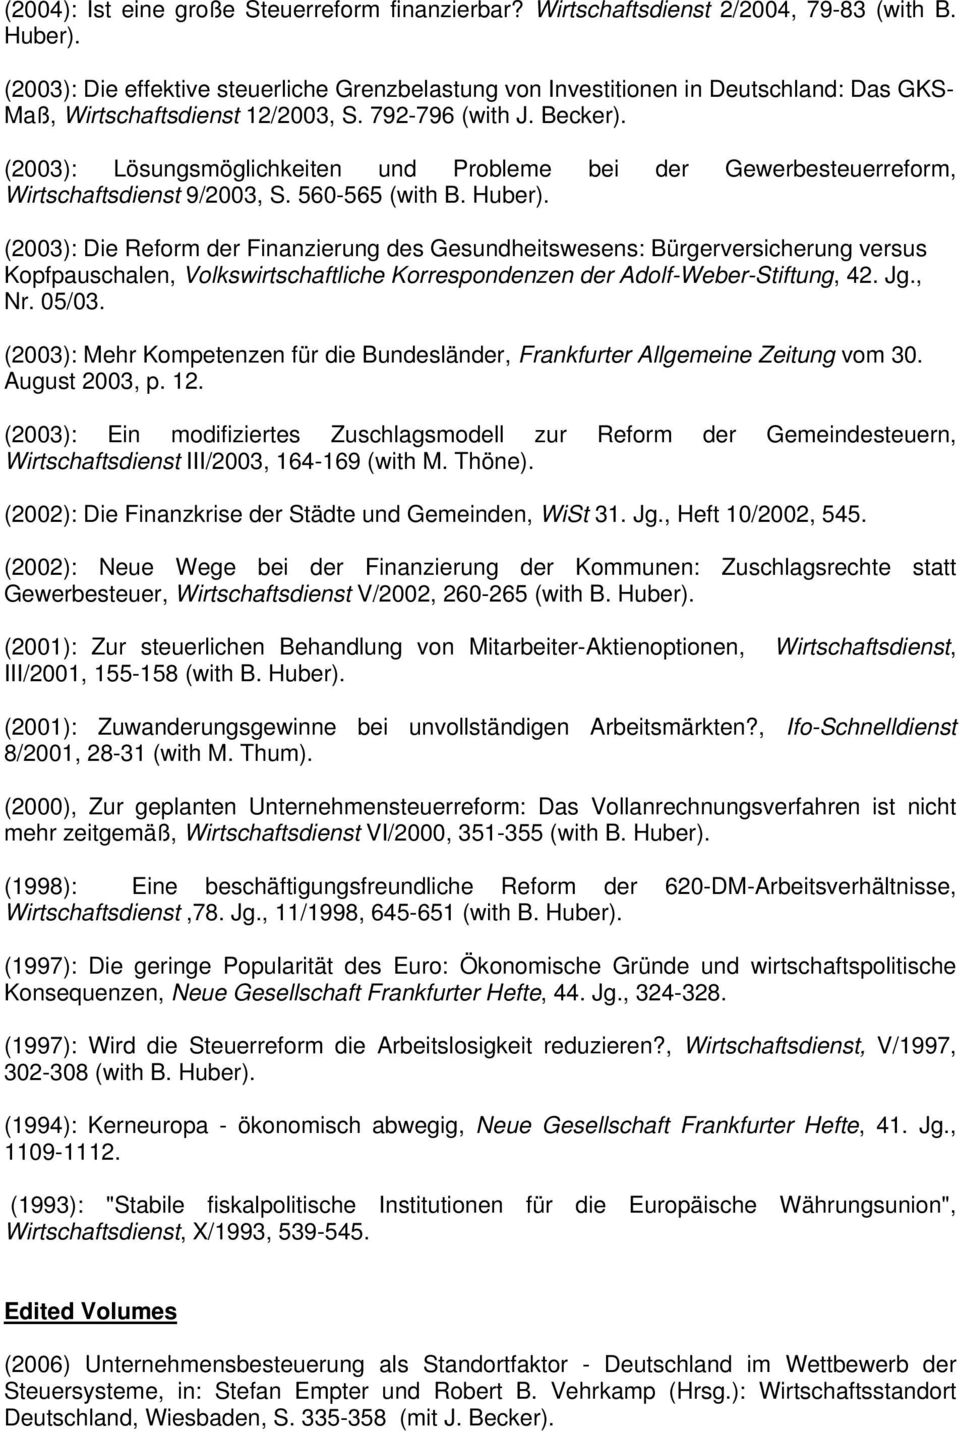 (2003): Lösungsmöglichkeiten und Probleme bei der Gewerbesteuerreform, Wirtschaftsdienst 9/2003, S. 560-565 (with B. Huber).